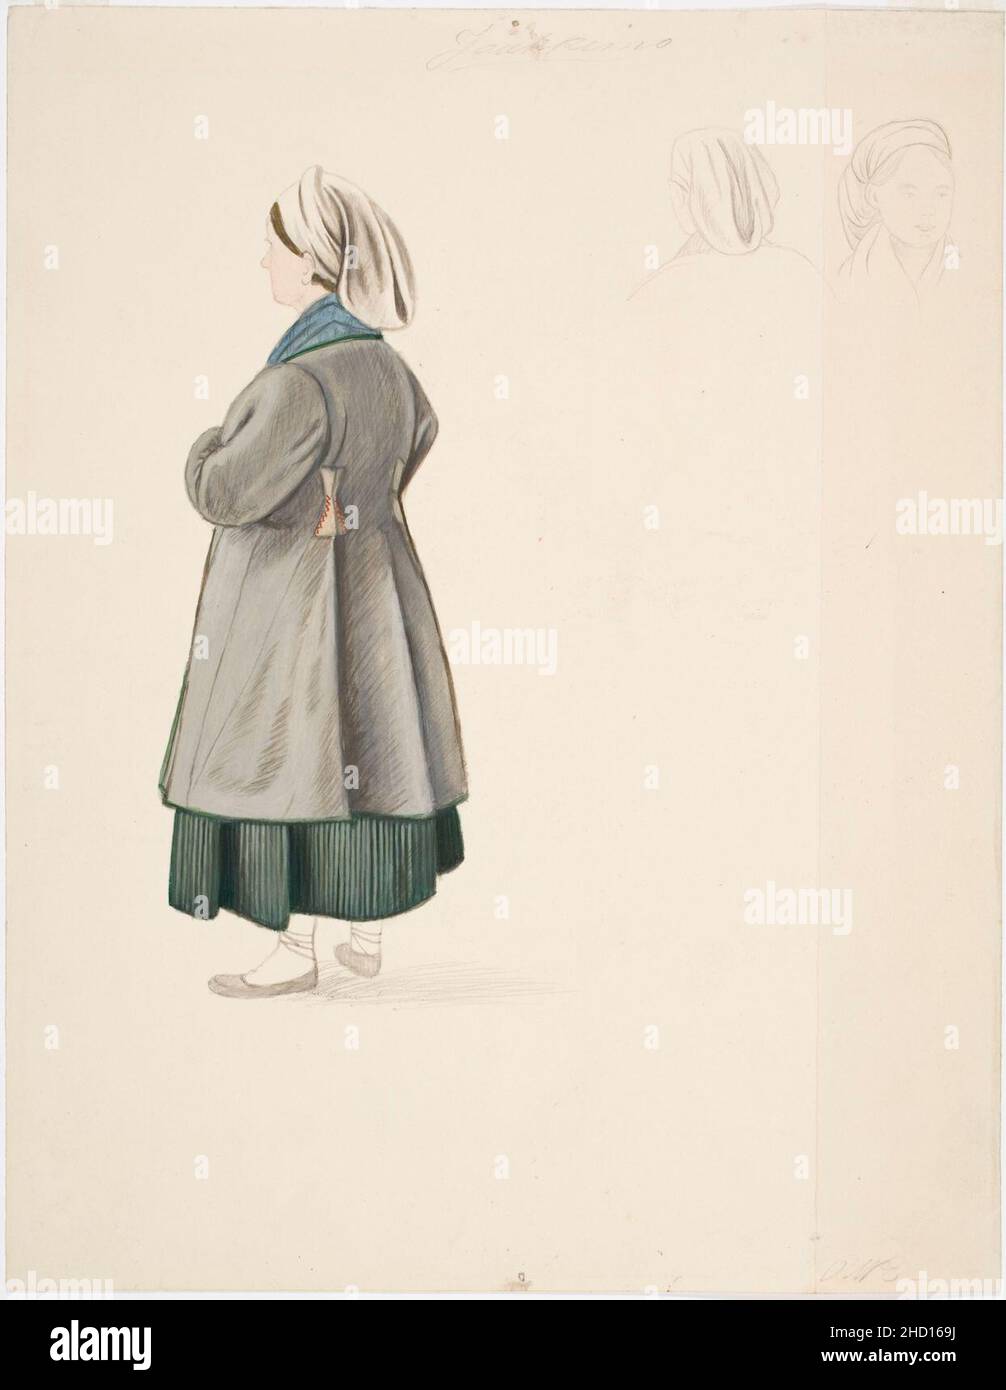 Robert Wilhelm Ekman - Seisova talonpoikaisnainen sekä kaksi naispäätä Jaakkimasta Stock Photo